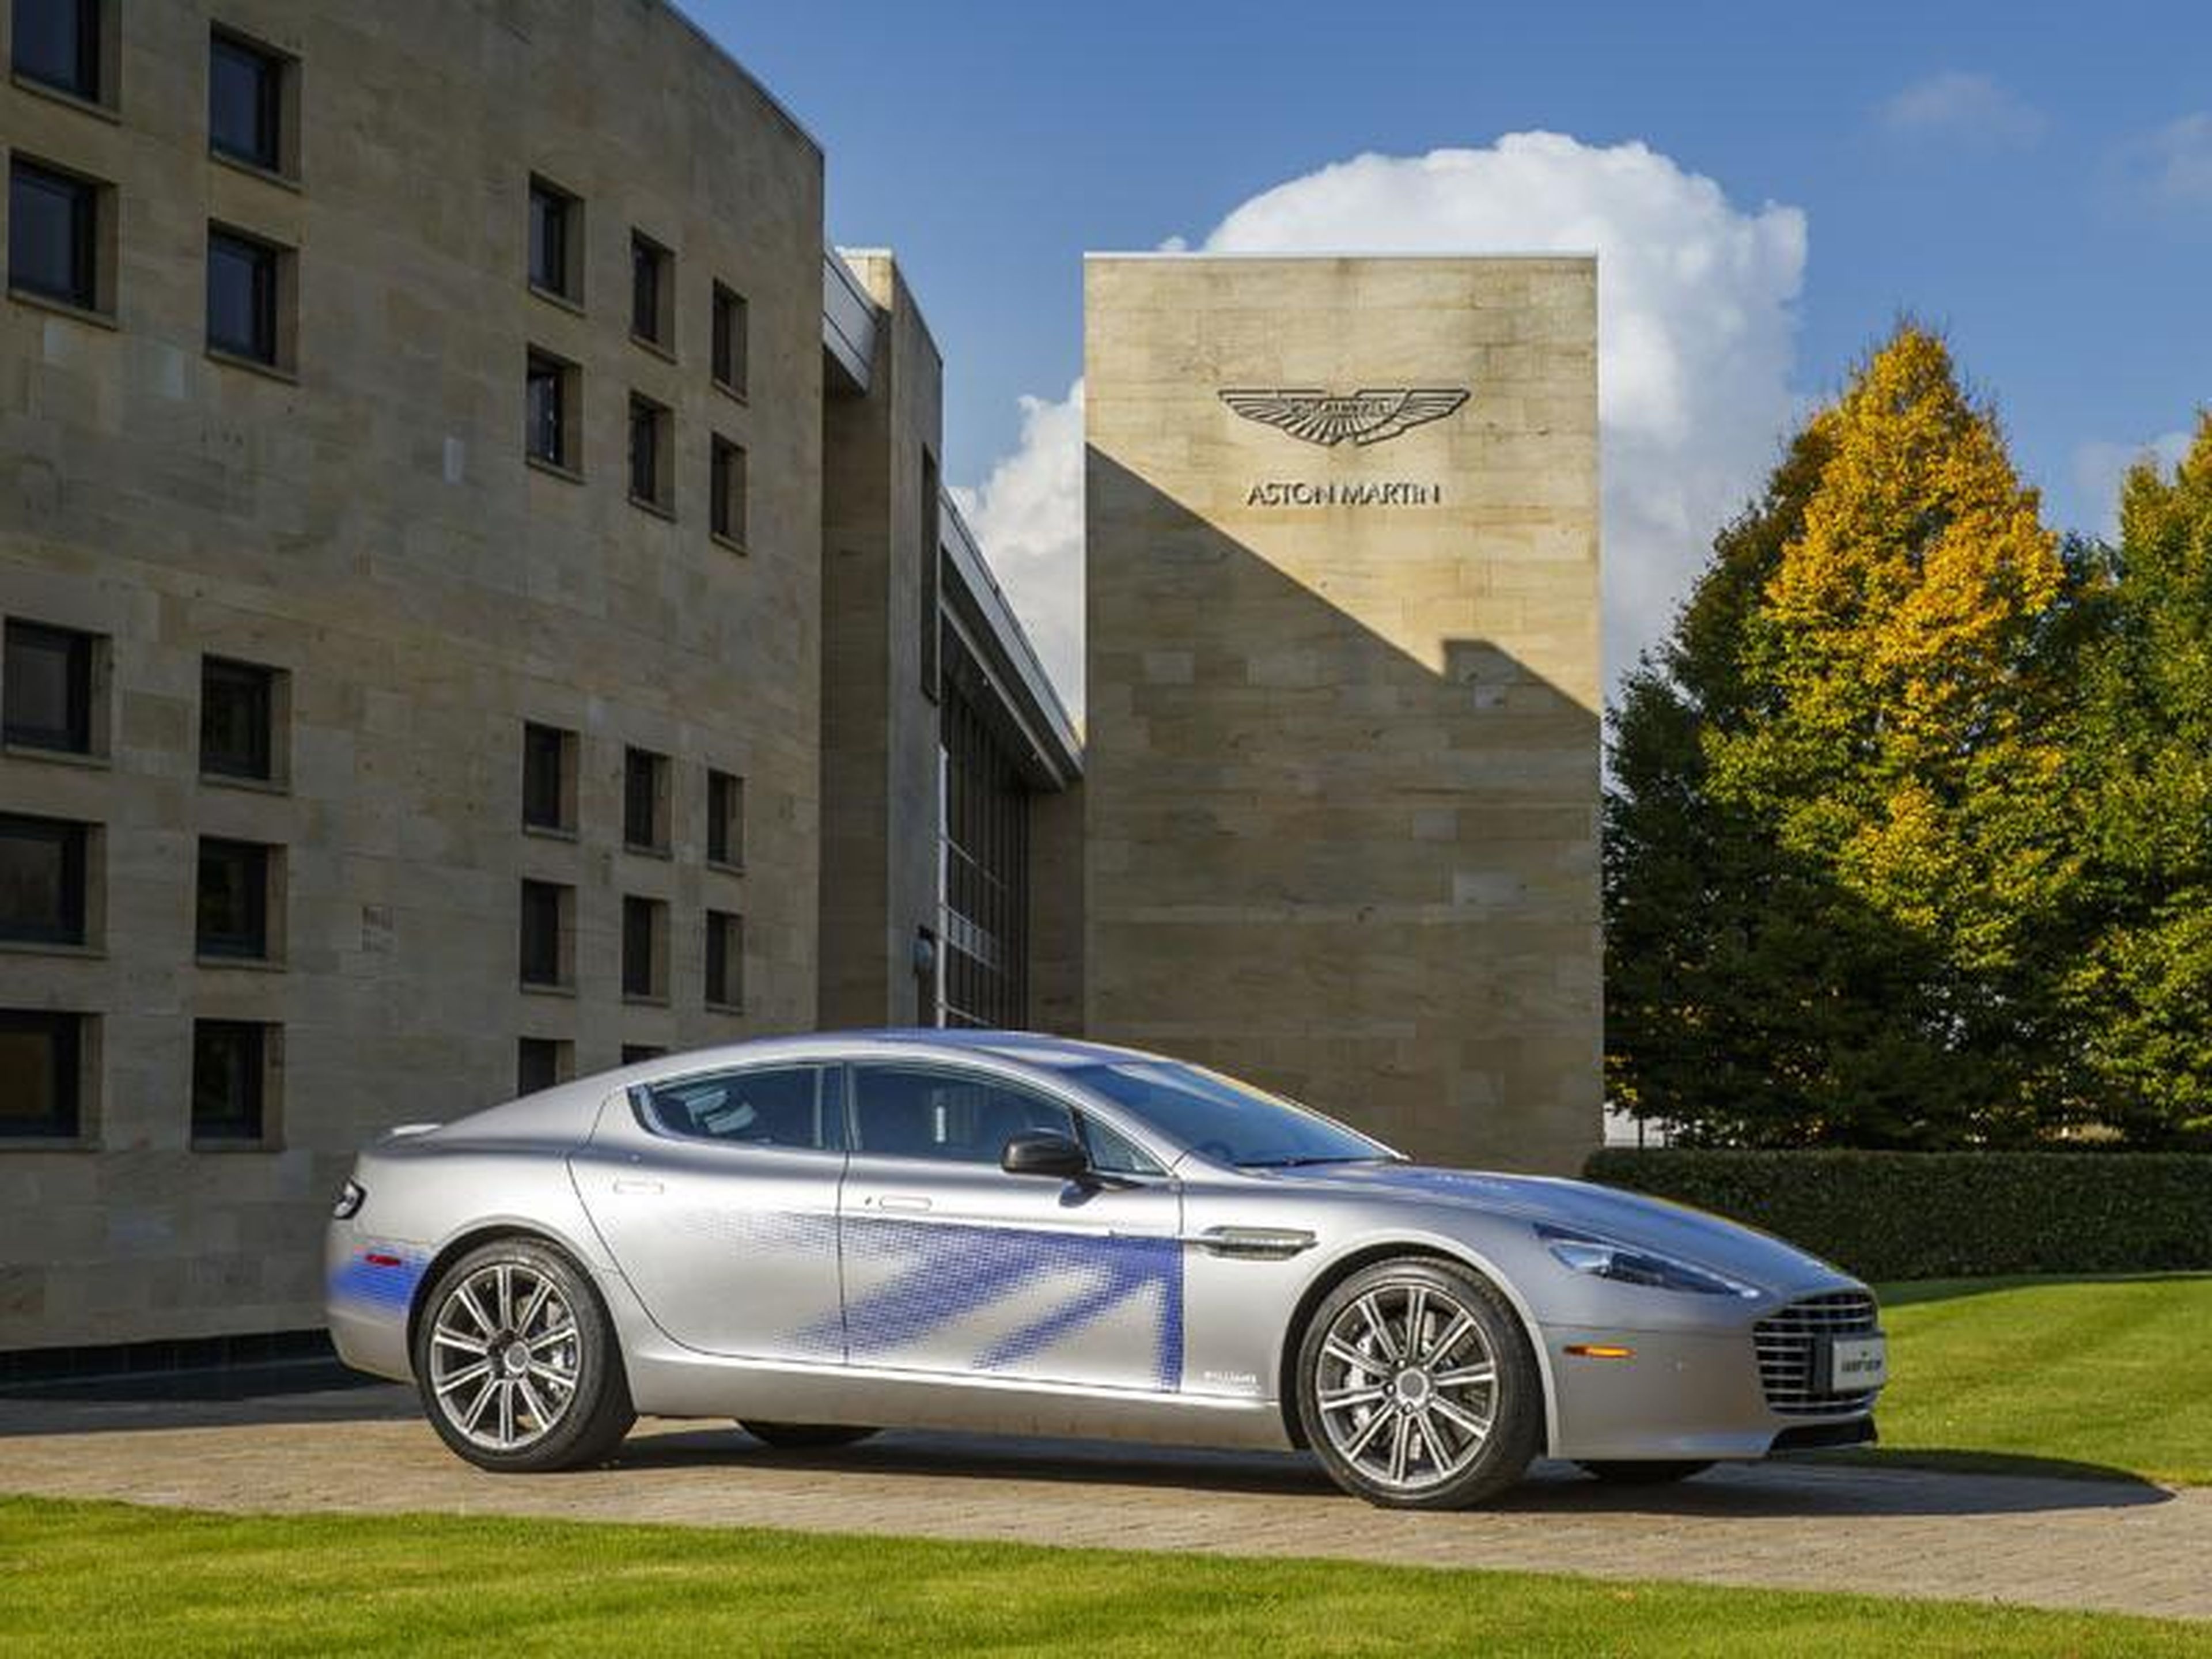 Aston Martin says the car will outdo Tesla.